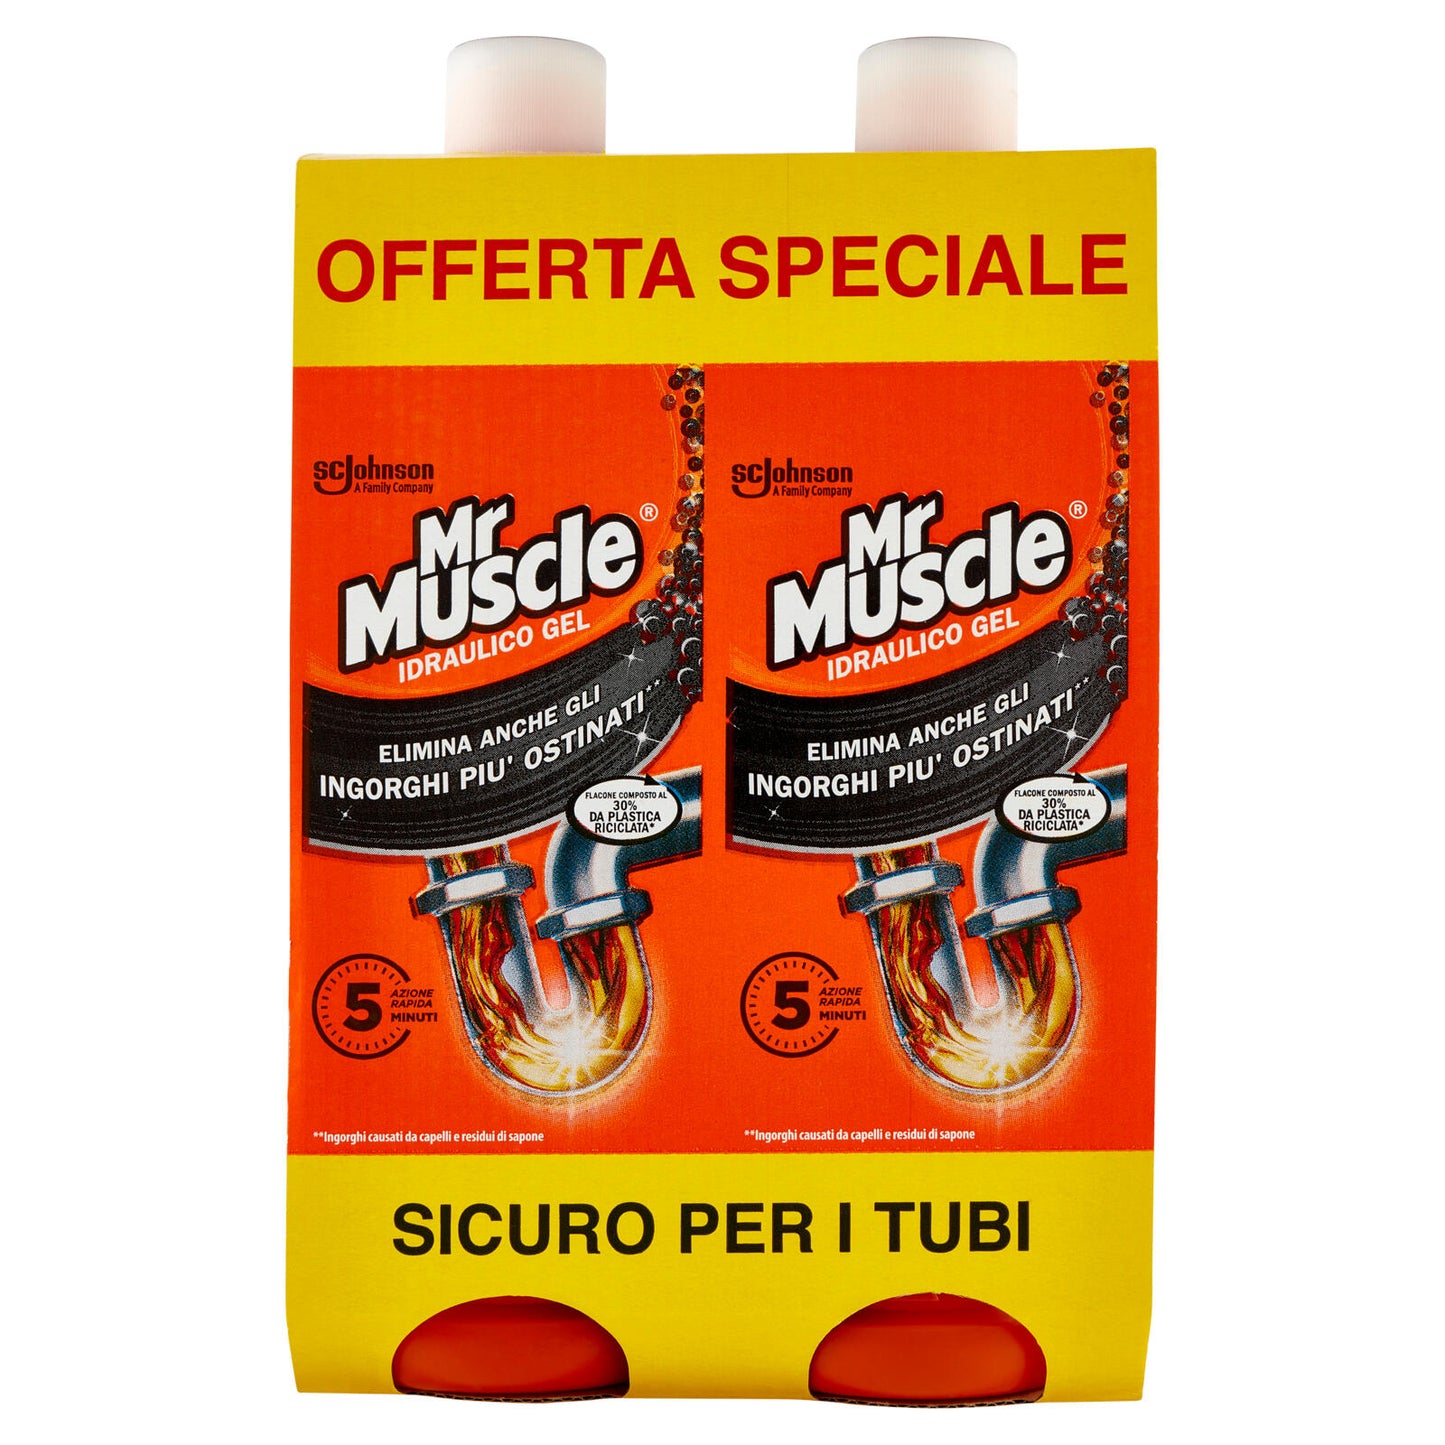 Mr. Muscolo Idraulico Gel 5 in 1 LT - D'Ambros Ipermercato